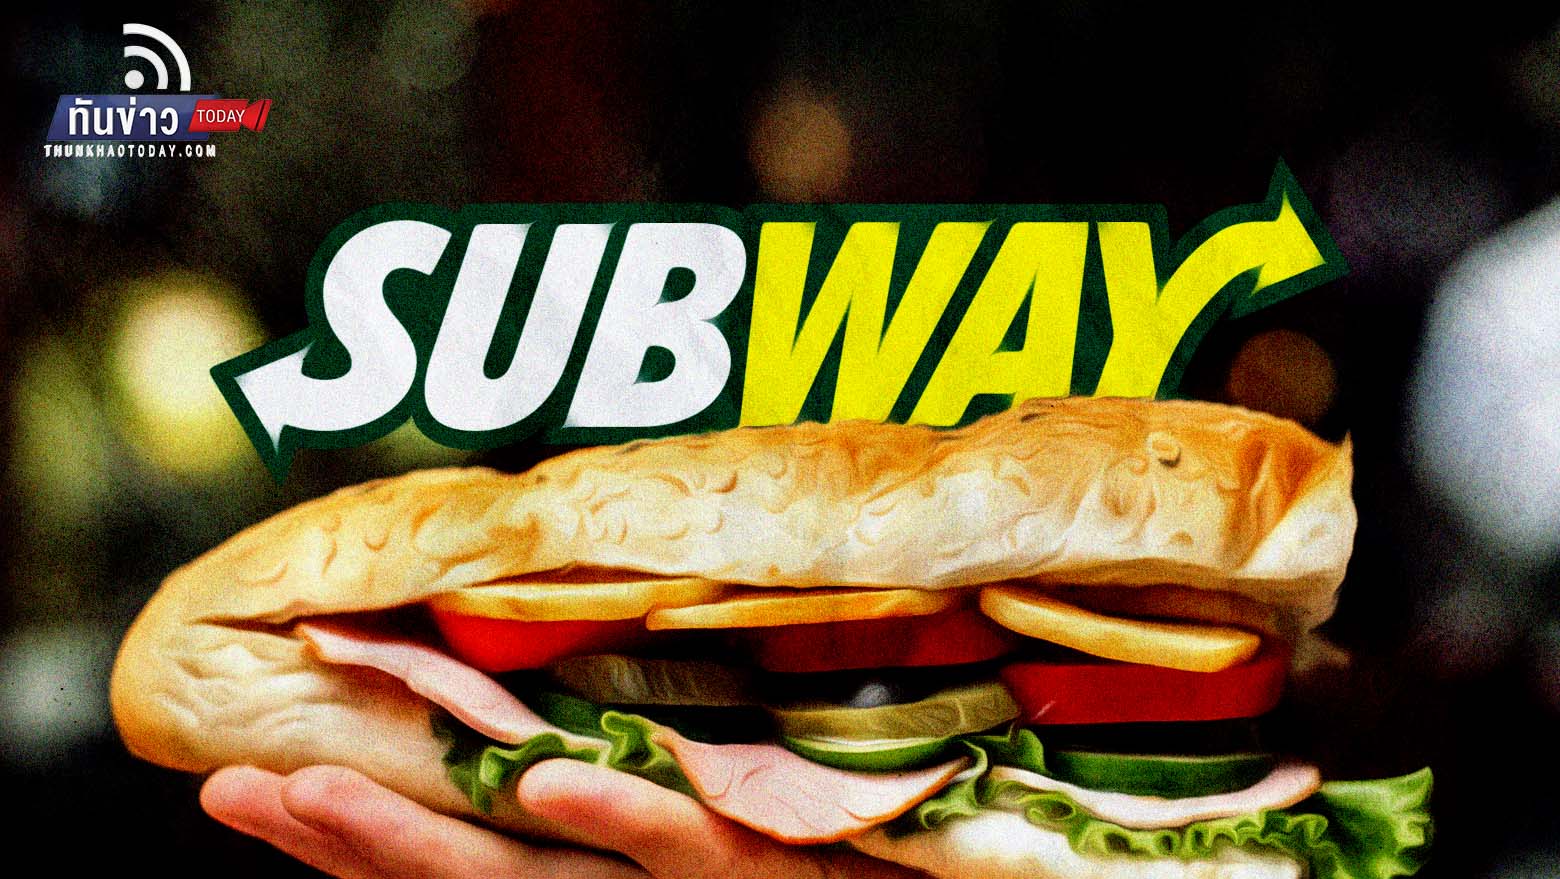 Subway ร้านแซนด์วิชชื่อดัง เตรียมขายกิจการทั่วโลกมูลค่า 3.43 แสนล้านบาท